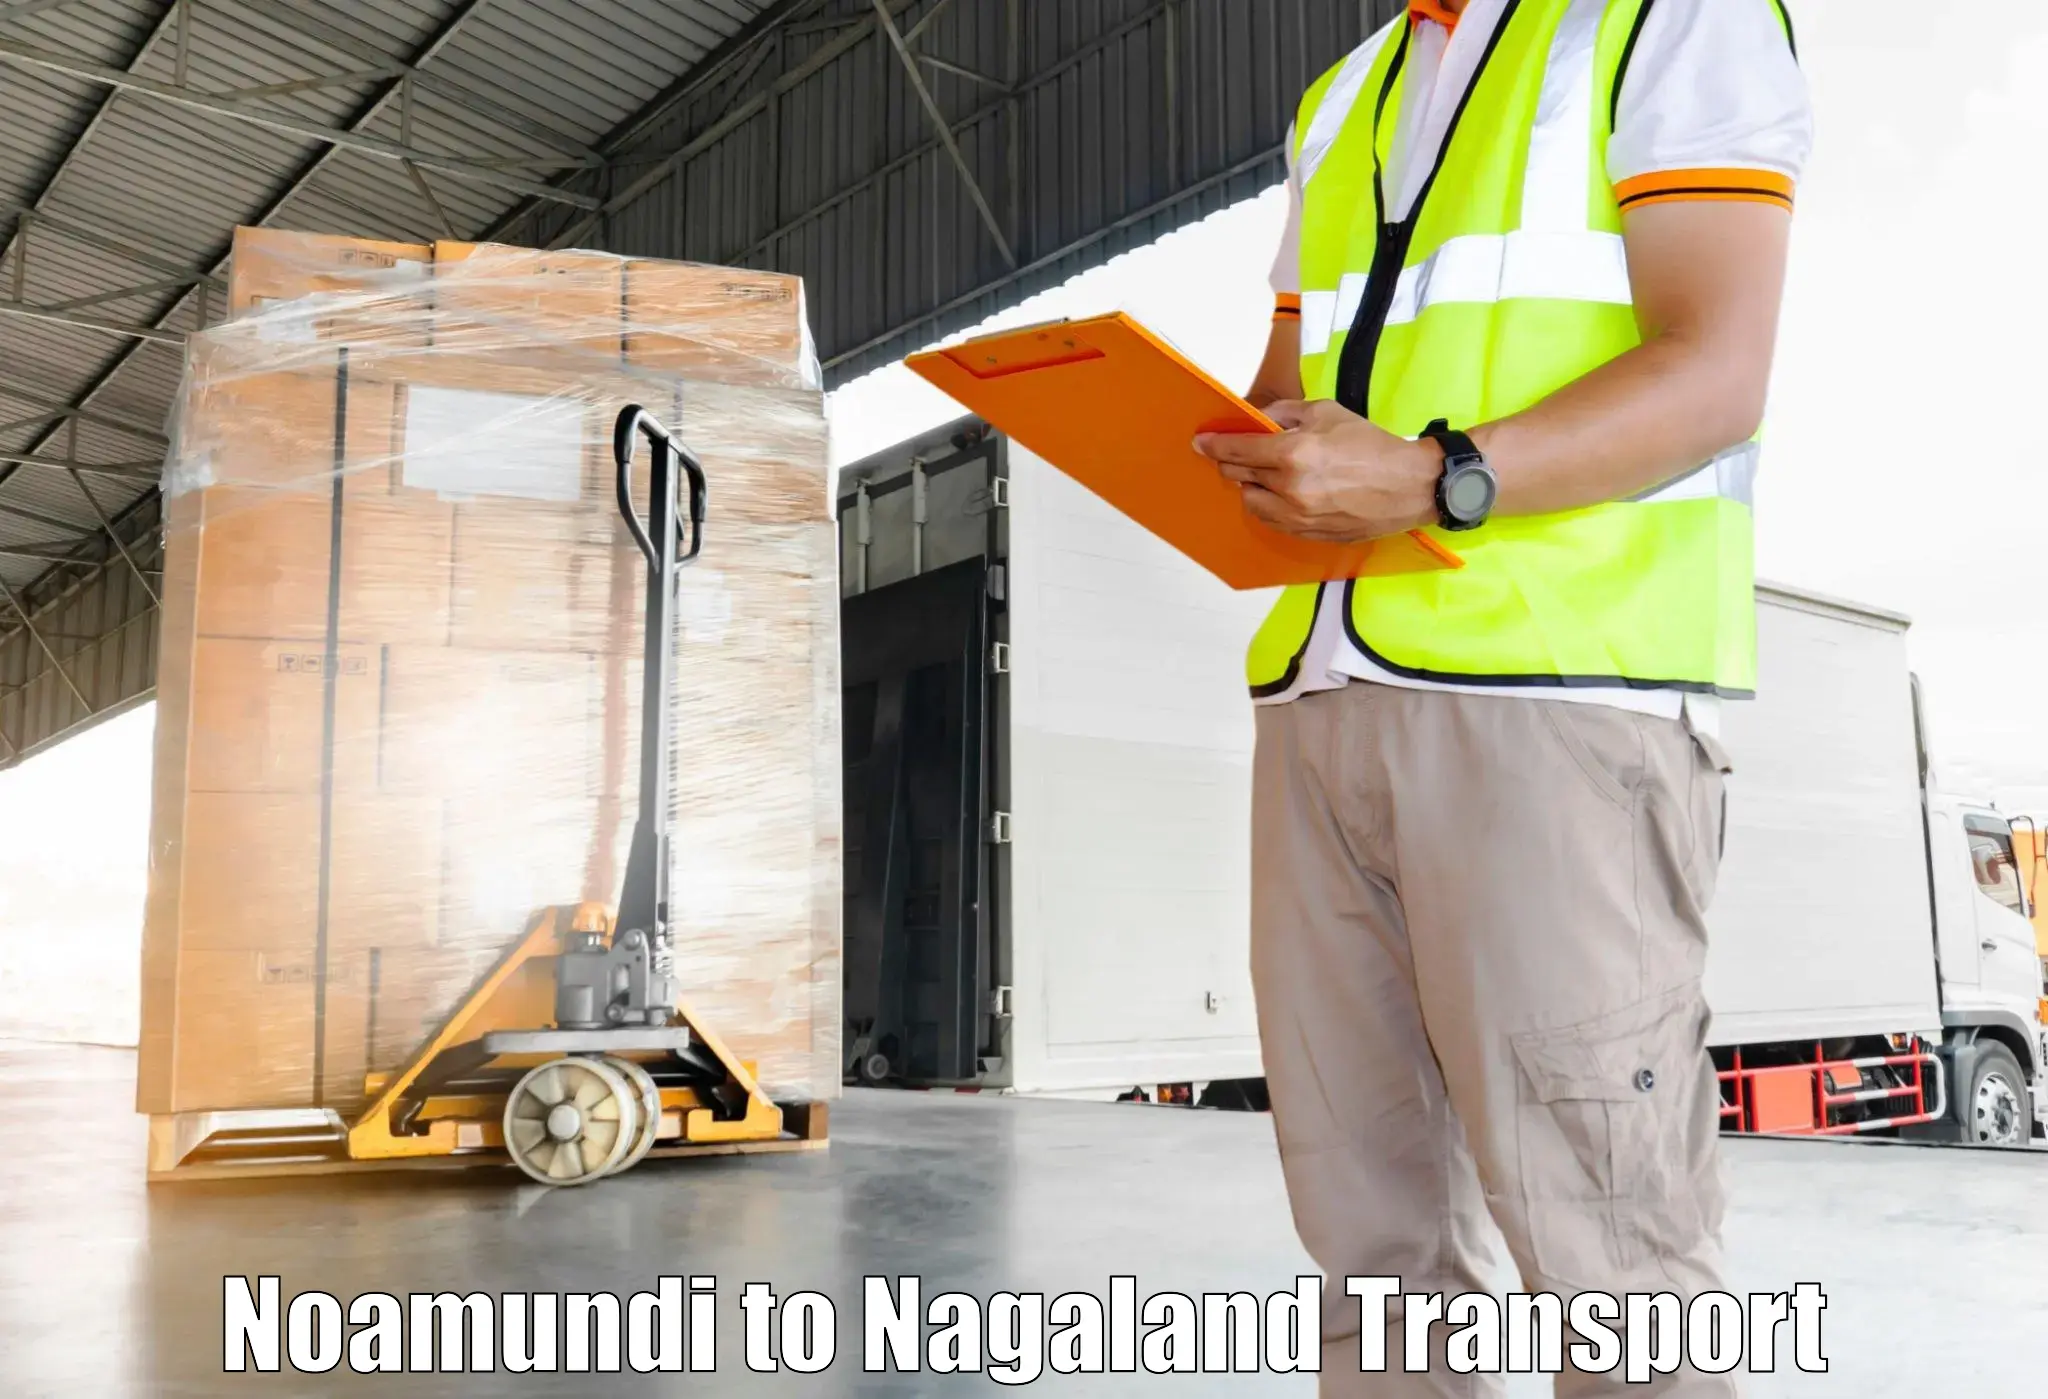 Scooty transport charges Noamundi to Nagaland